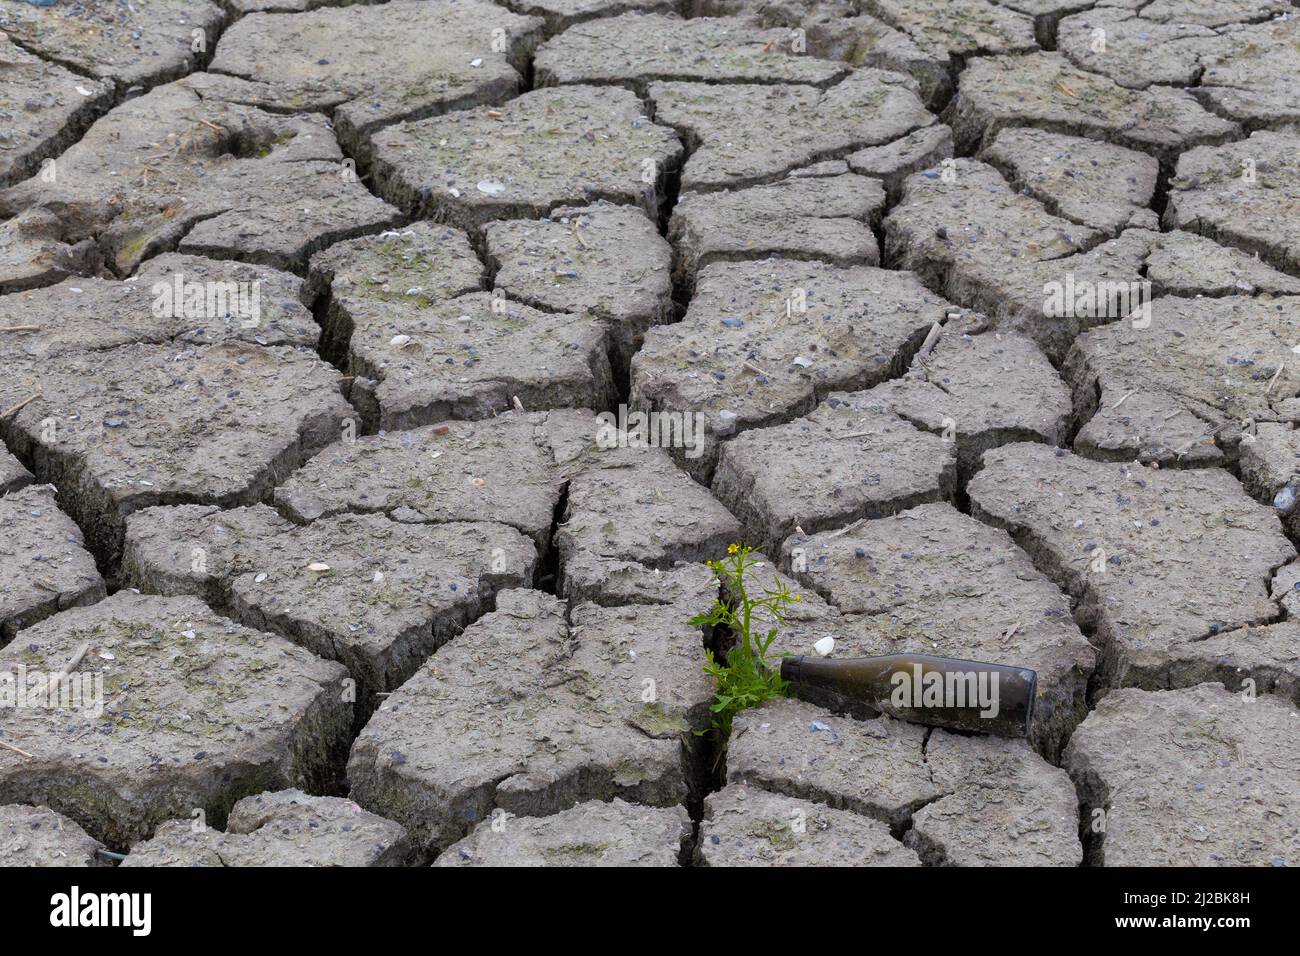 Umweltzerstörung, Durst, Öde, Trockenheit Stock Photo